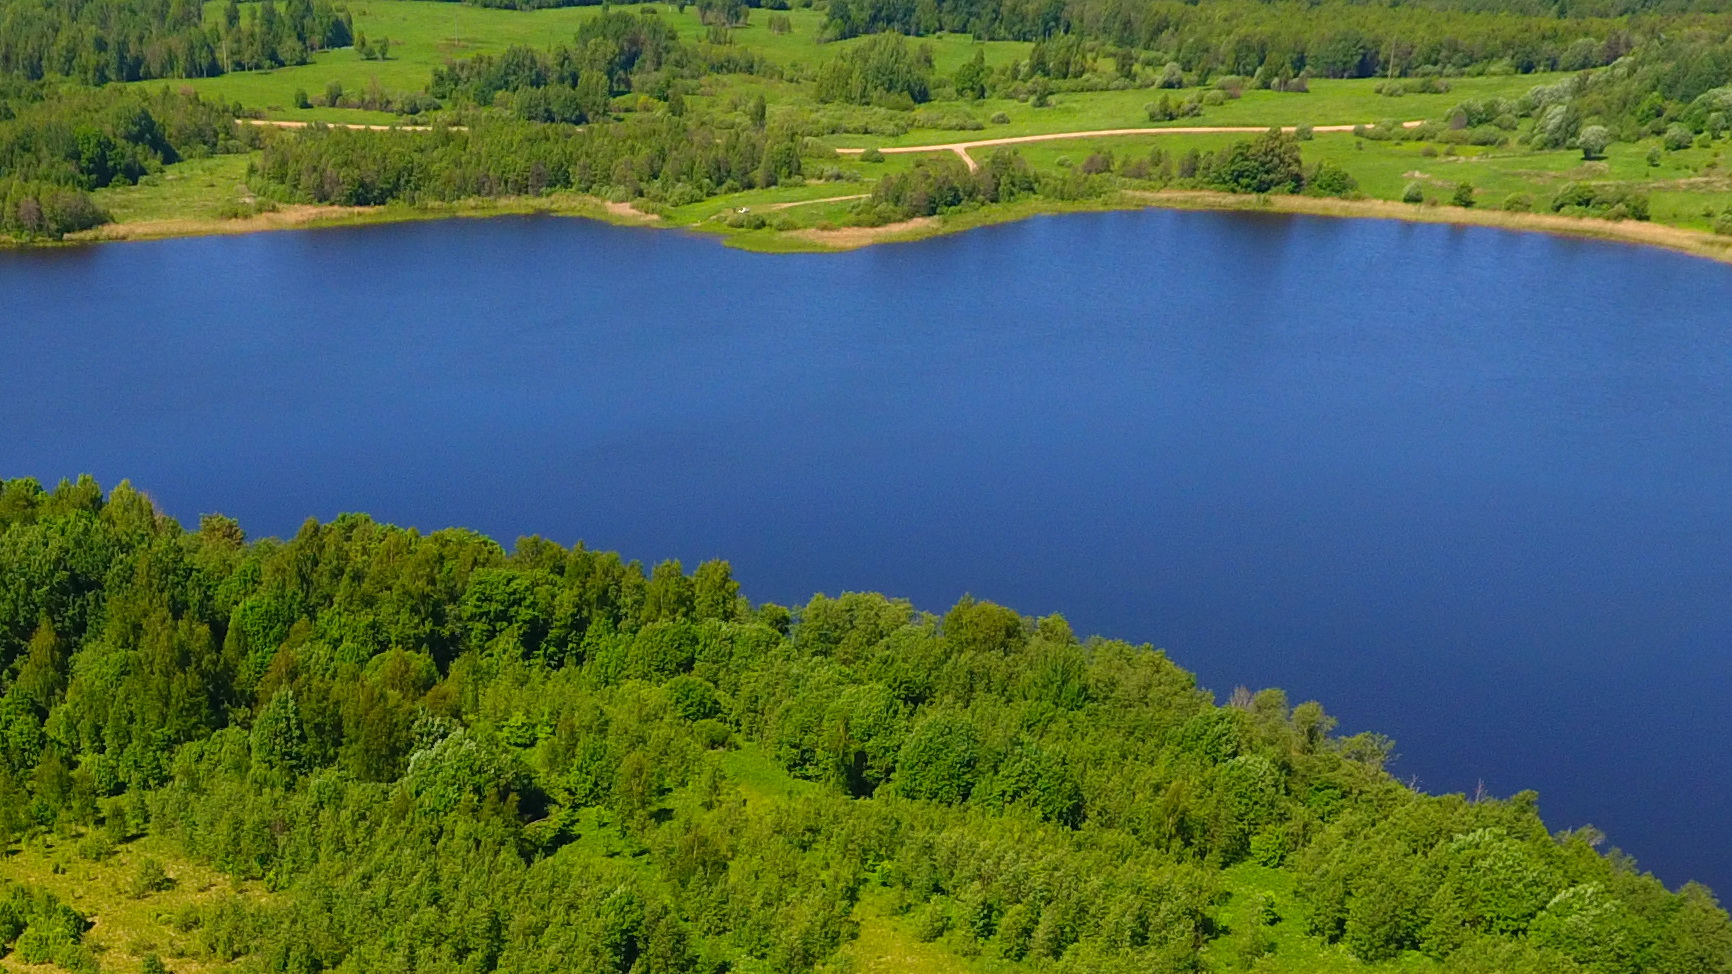  полоса озера Локново составляет 300 метров, Локнянский район